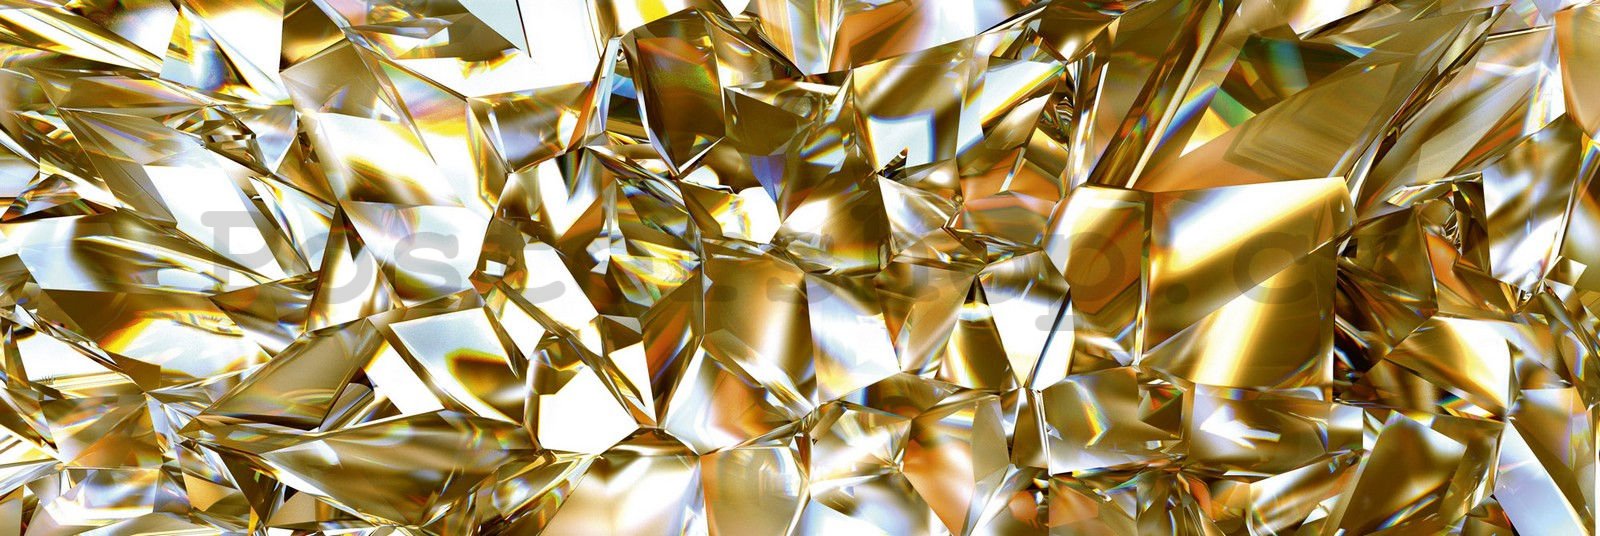 Samolepící omyvatelná tapeta za kuchyňskou linku - Zlaté krystaly, 180x60 cm